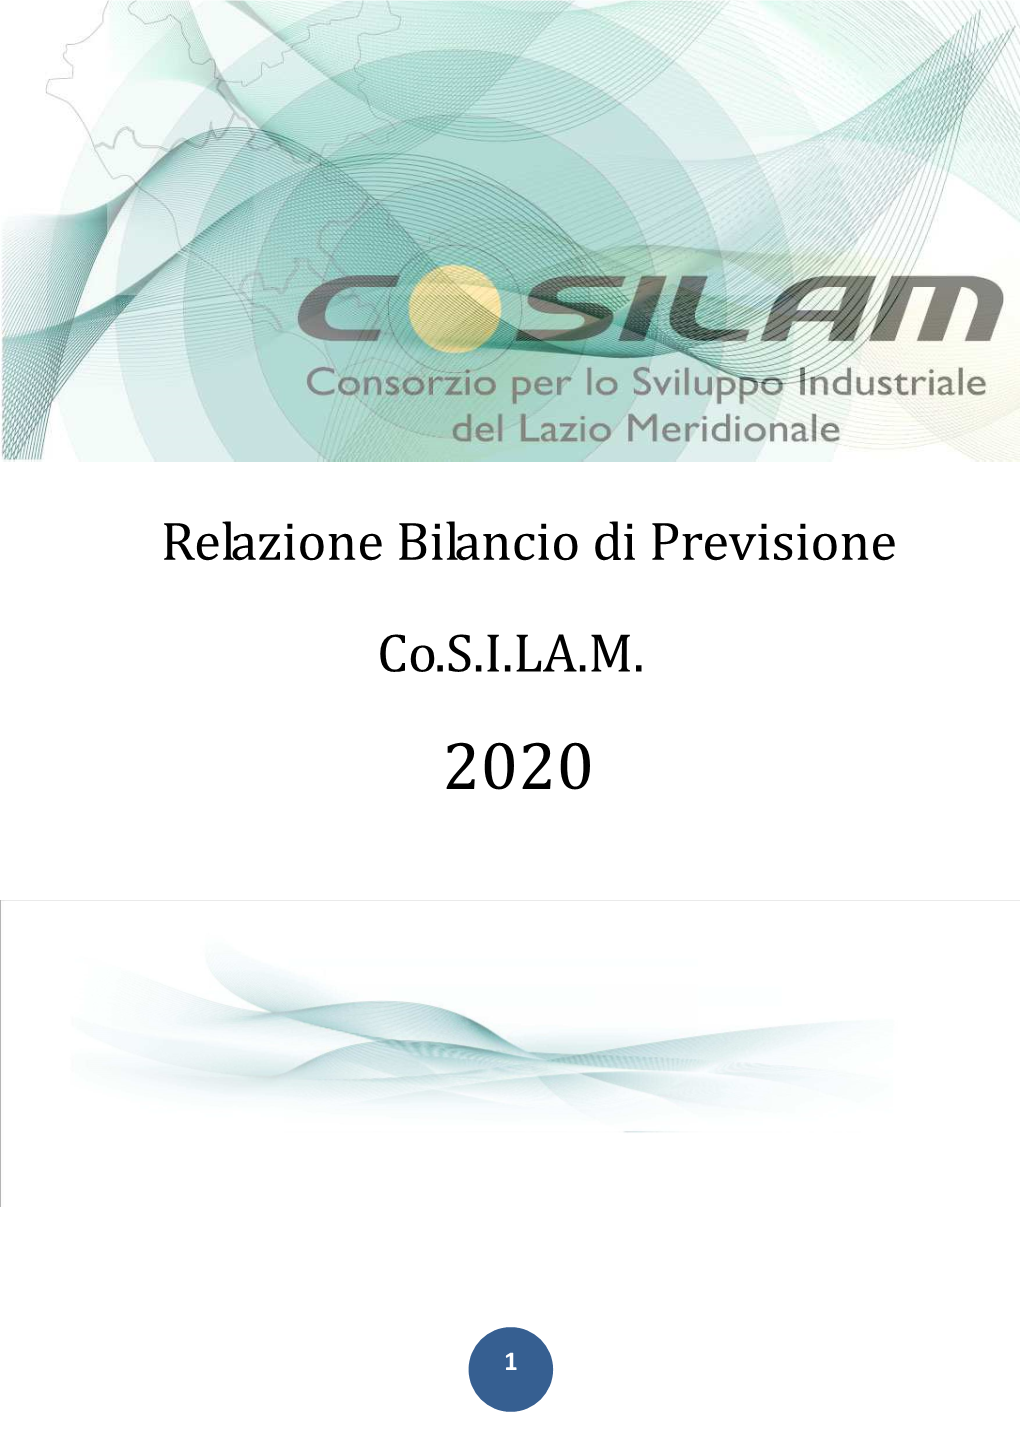 Relazione CDA Bilancio Di Previsione 2020